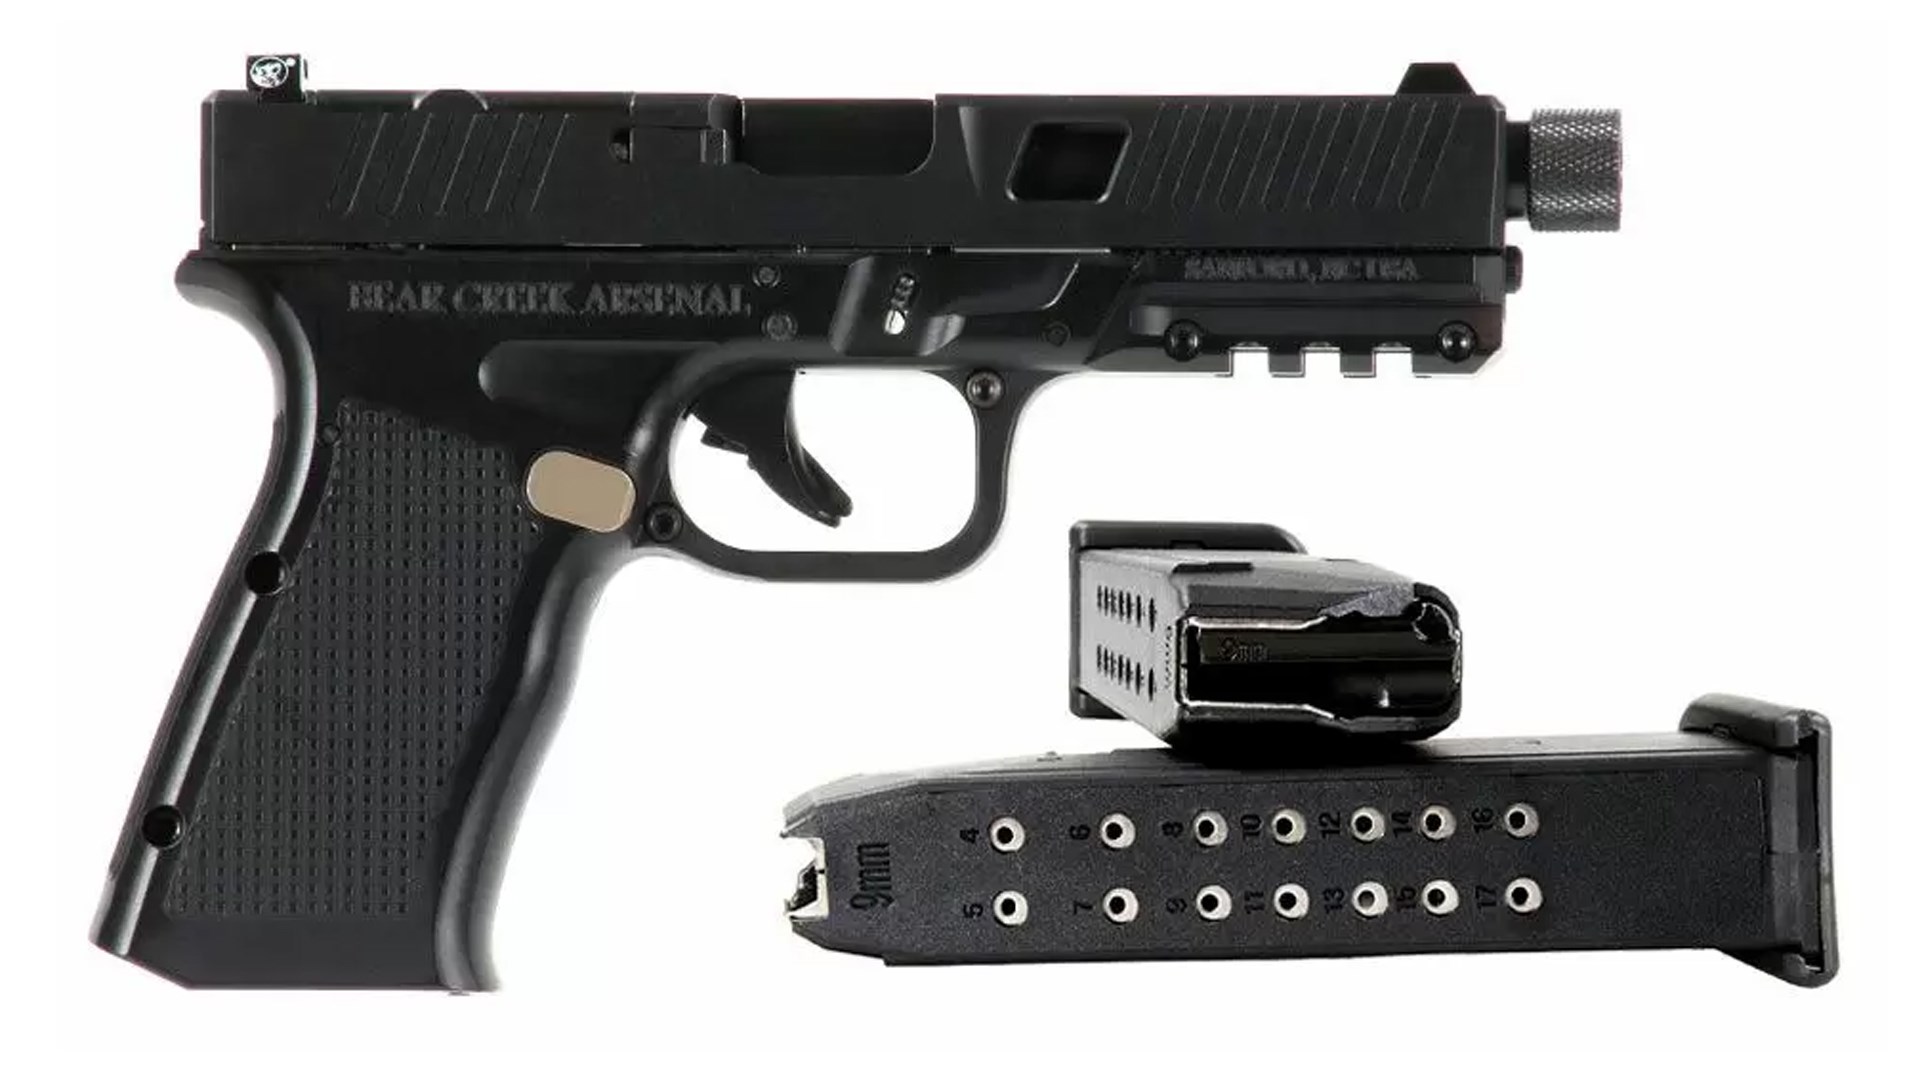 Right side of the Bear Creek Arsenal Genes1s II pistol, shown alongside two Glock pistol magazines.